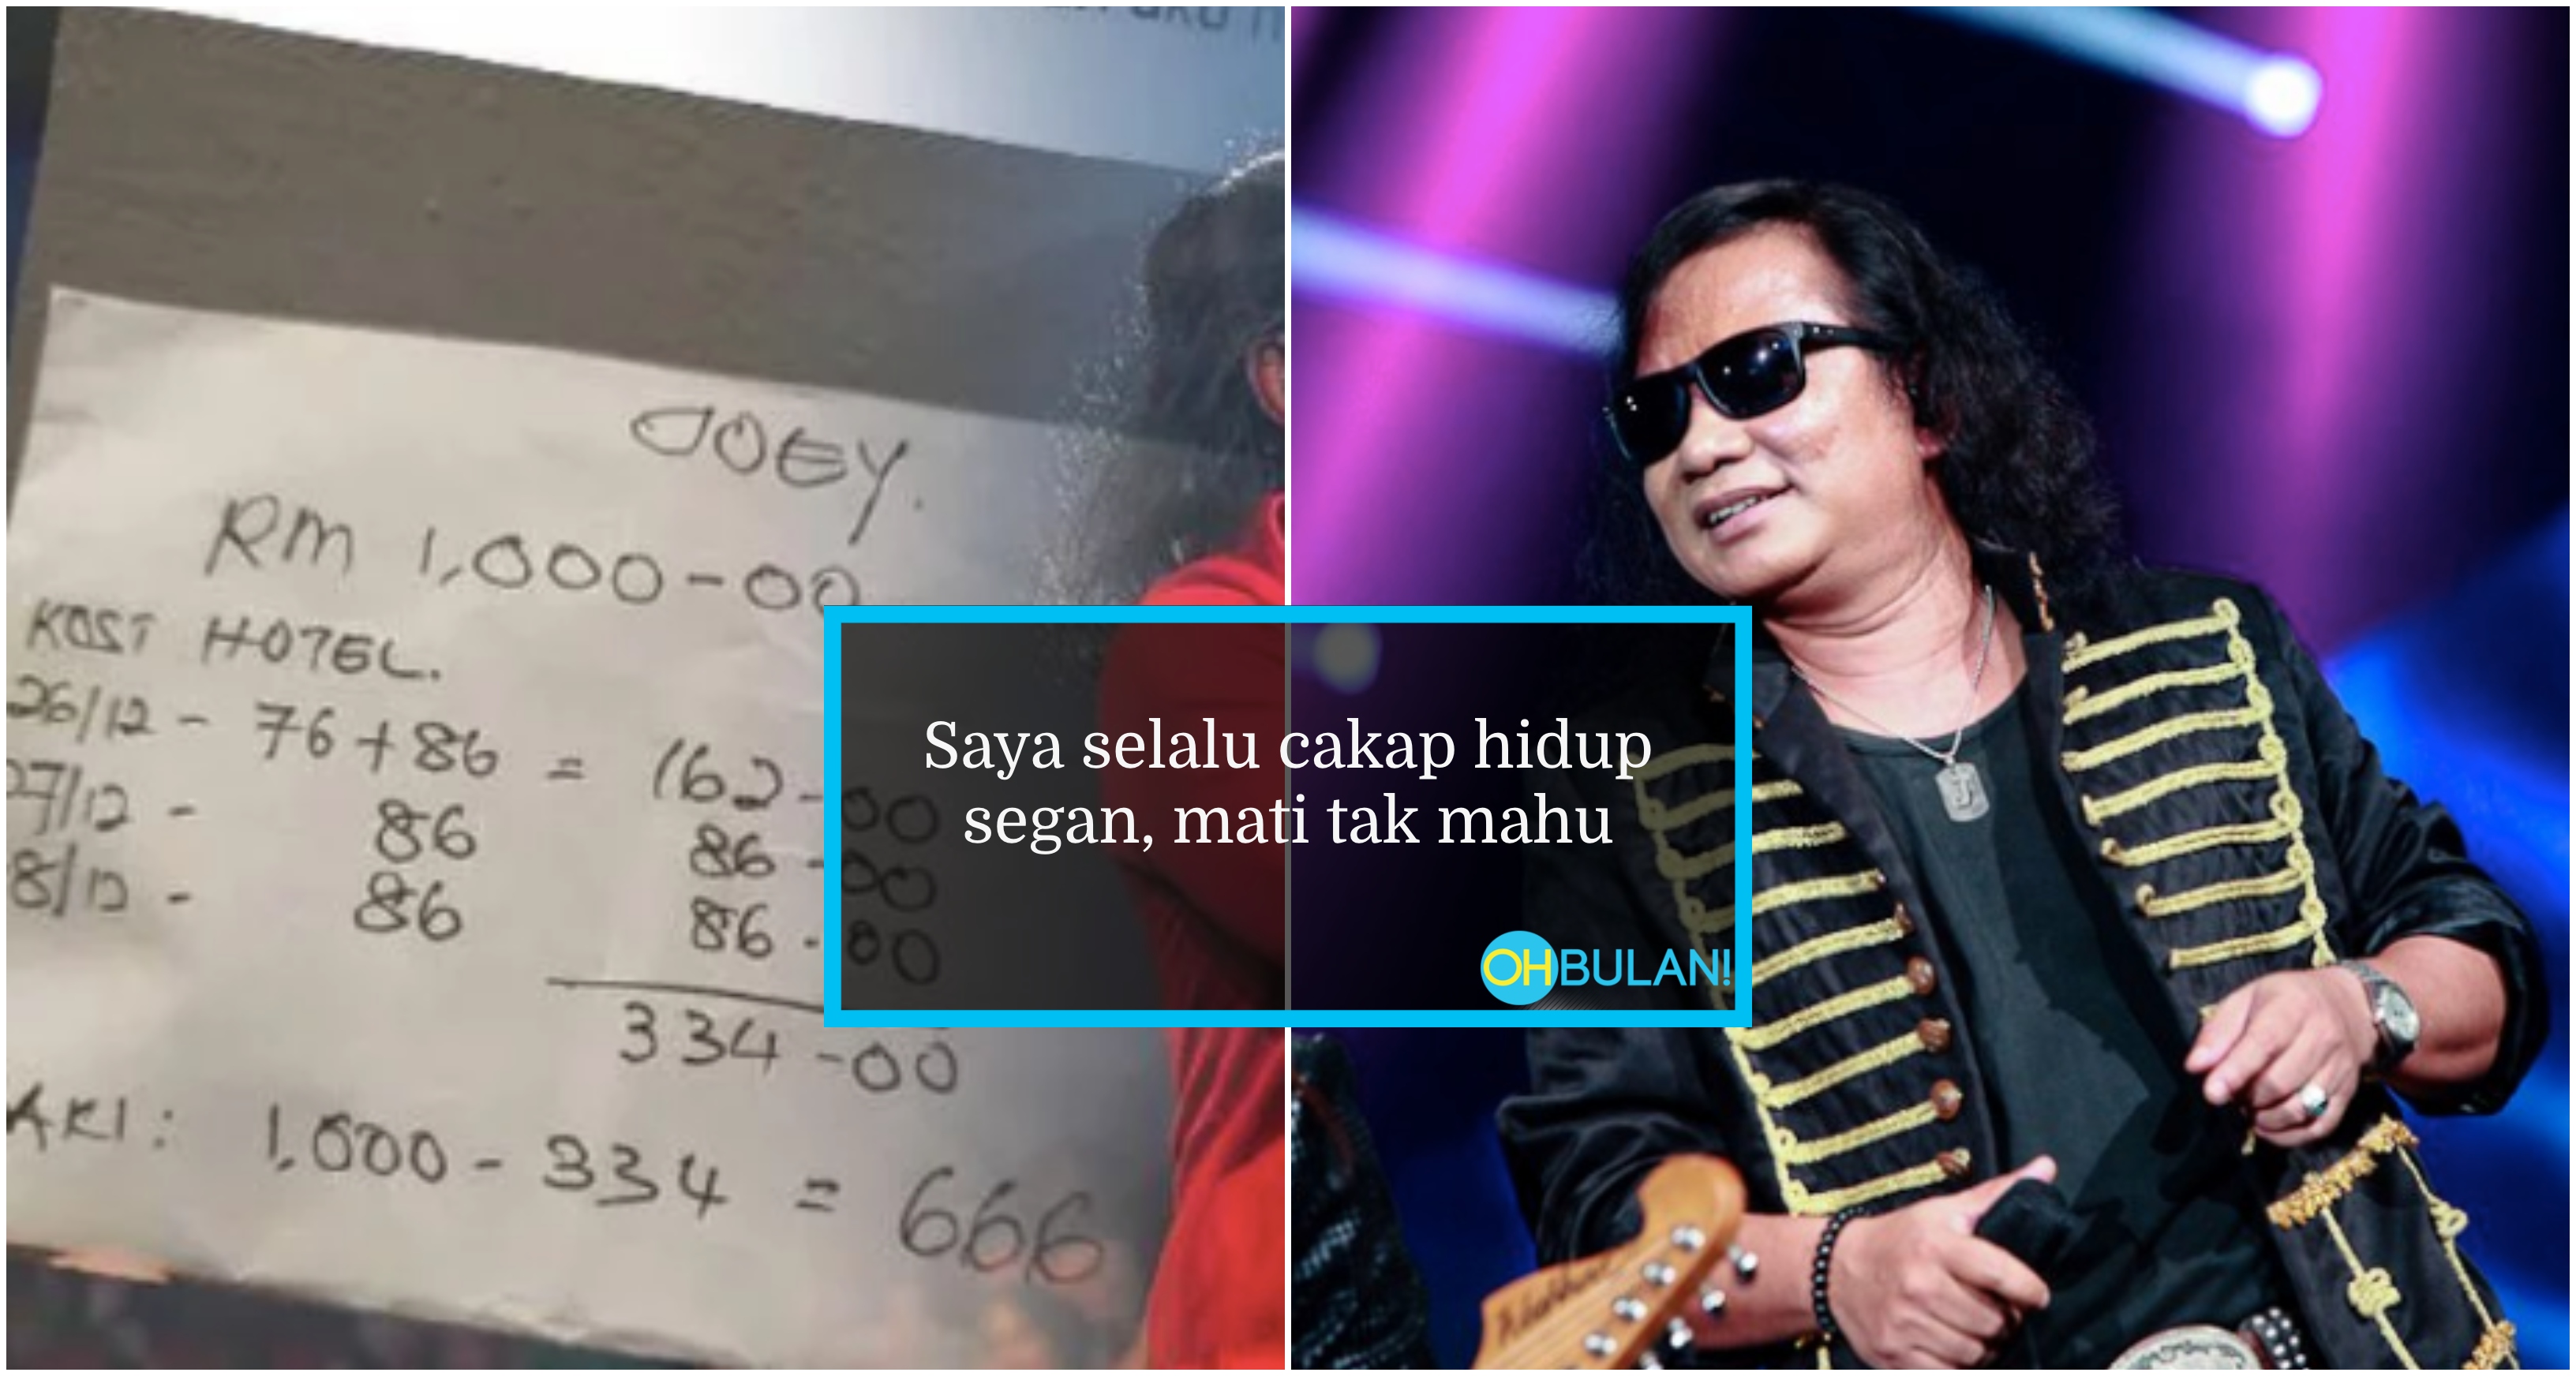 ‘Hidup Segan, Mati Tak Mahu’ – Joey BPR Luah Kecewa Bayaran Persembahan Cuma RM666